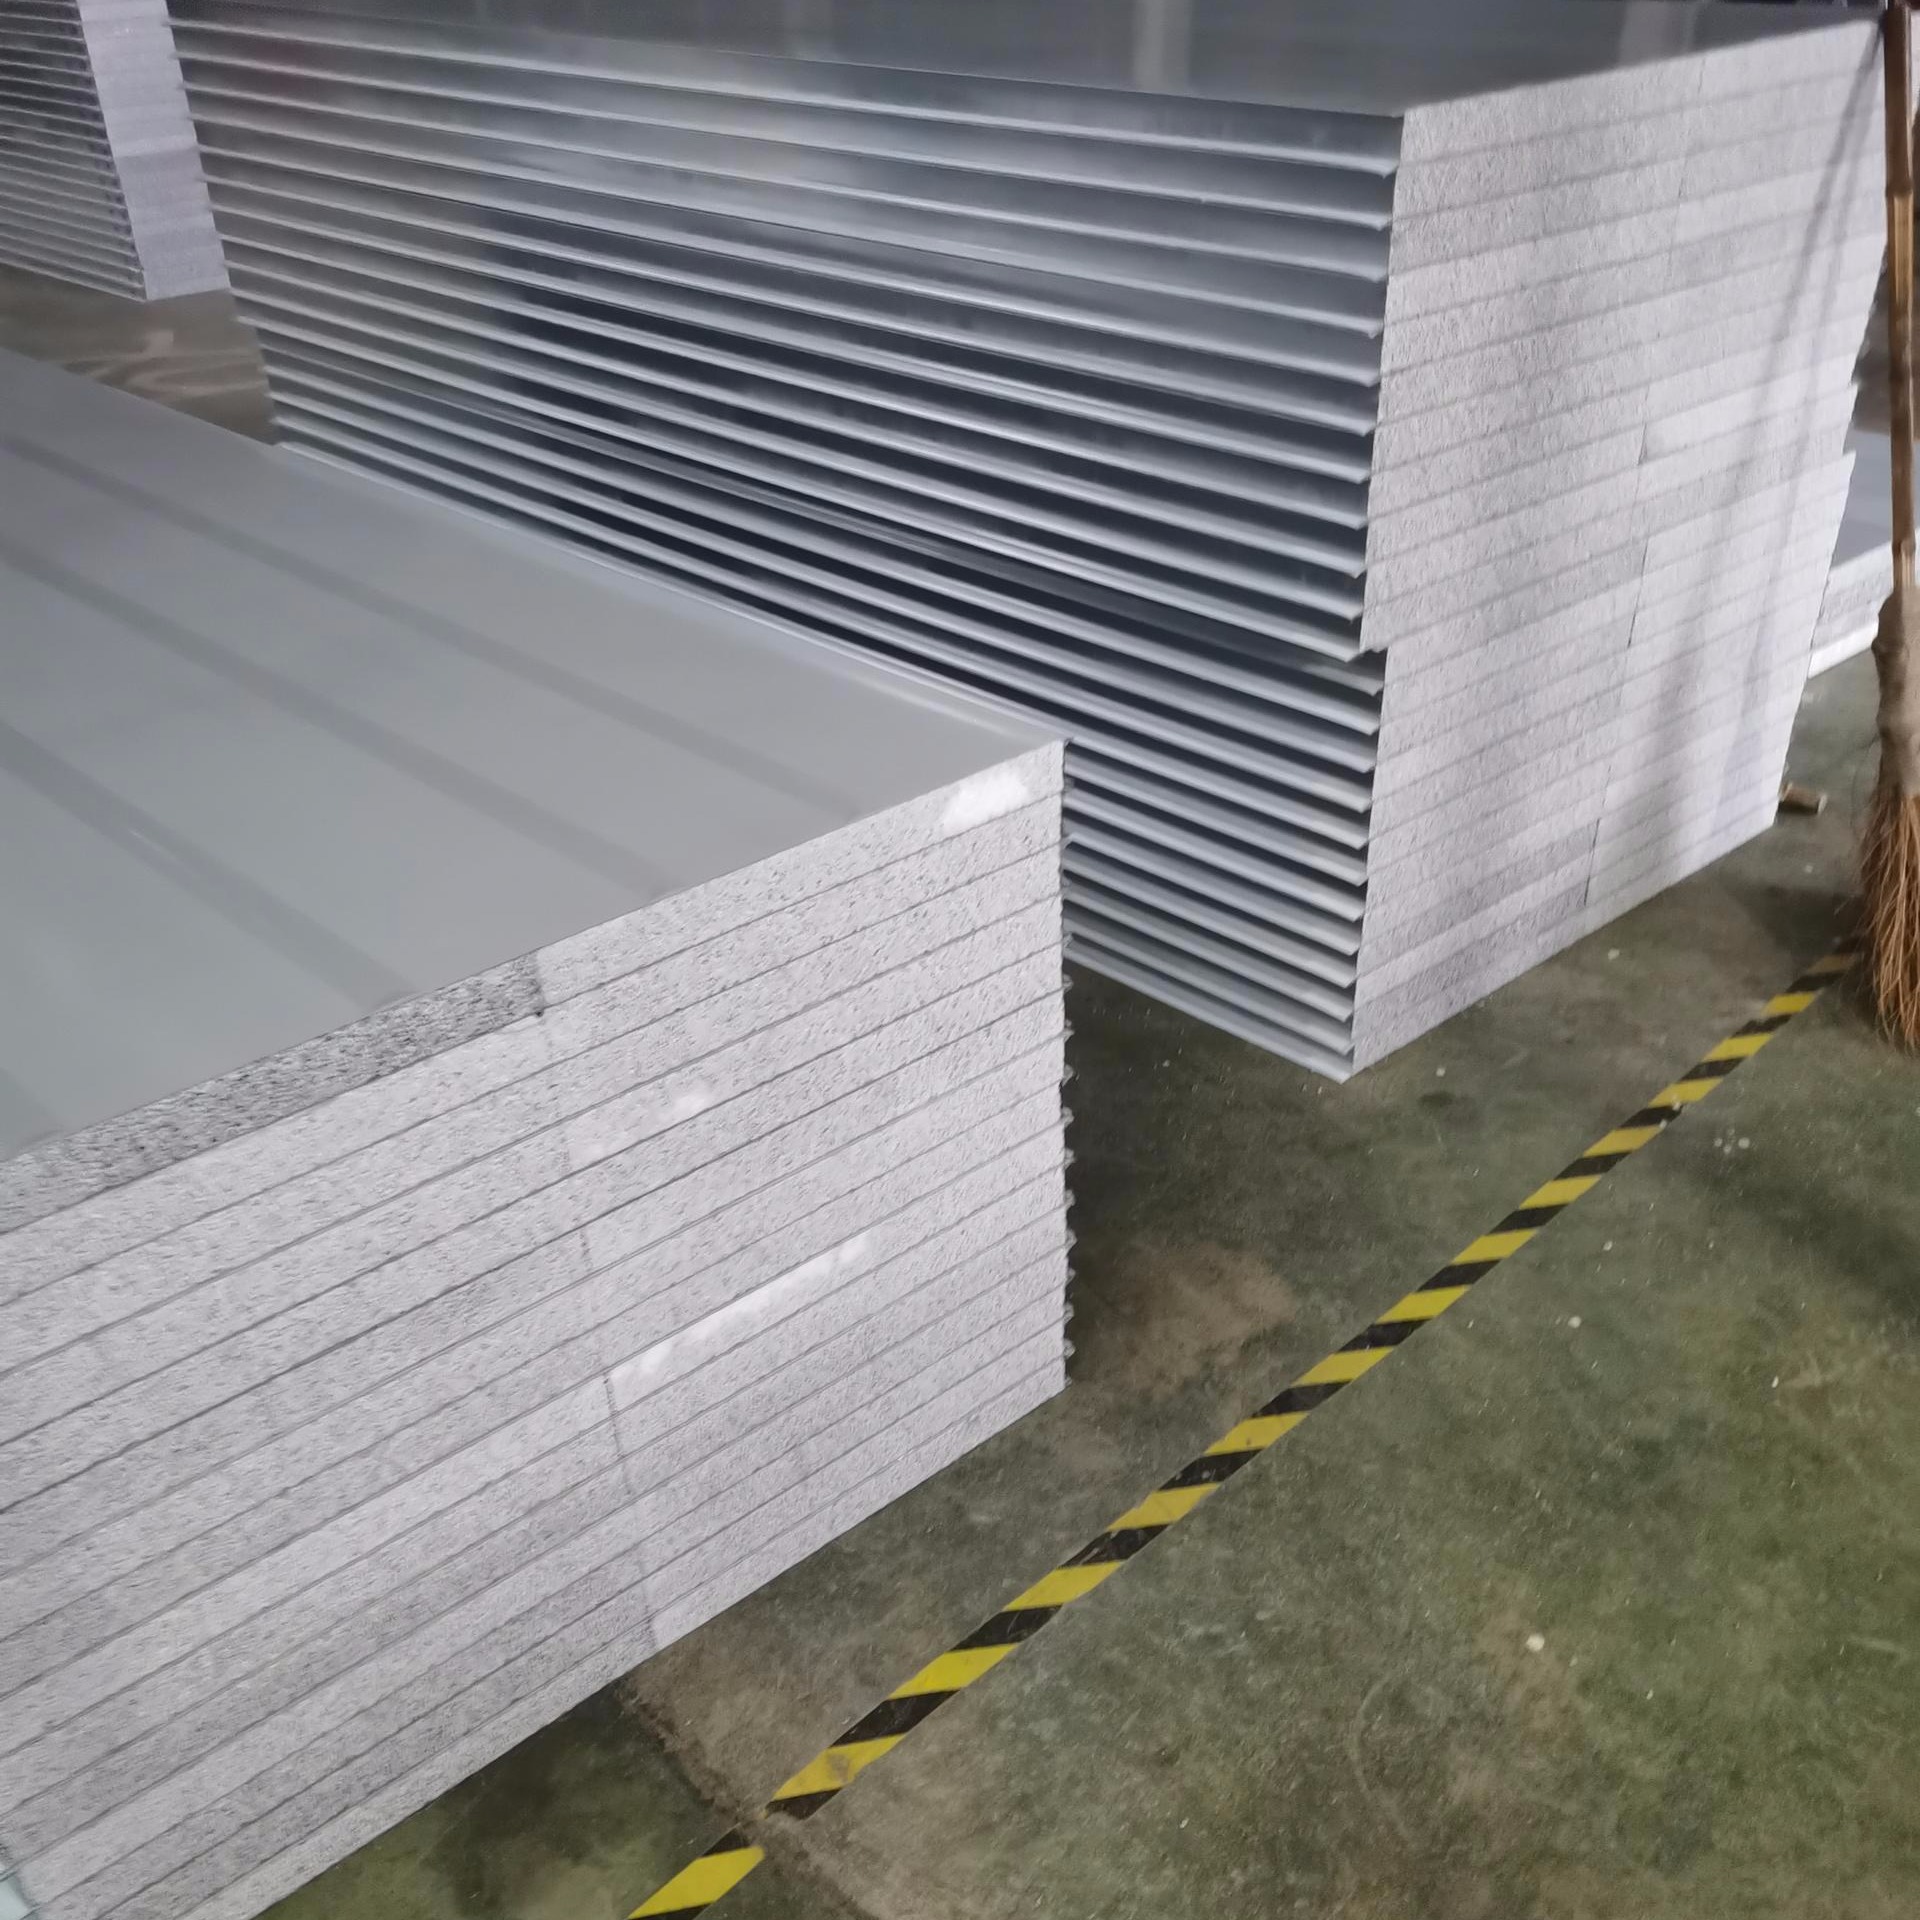 永硕夹芯板厂家直销硅岩净化板 硅岩夹芯板 硅岩彩钢板 950型1150型机制板 物美价廉 量大价优